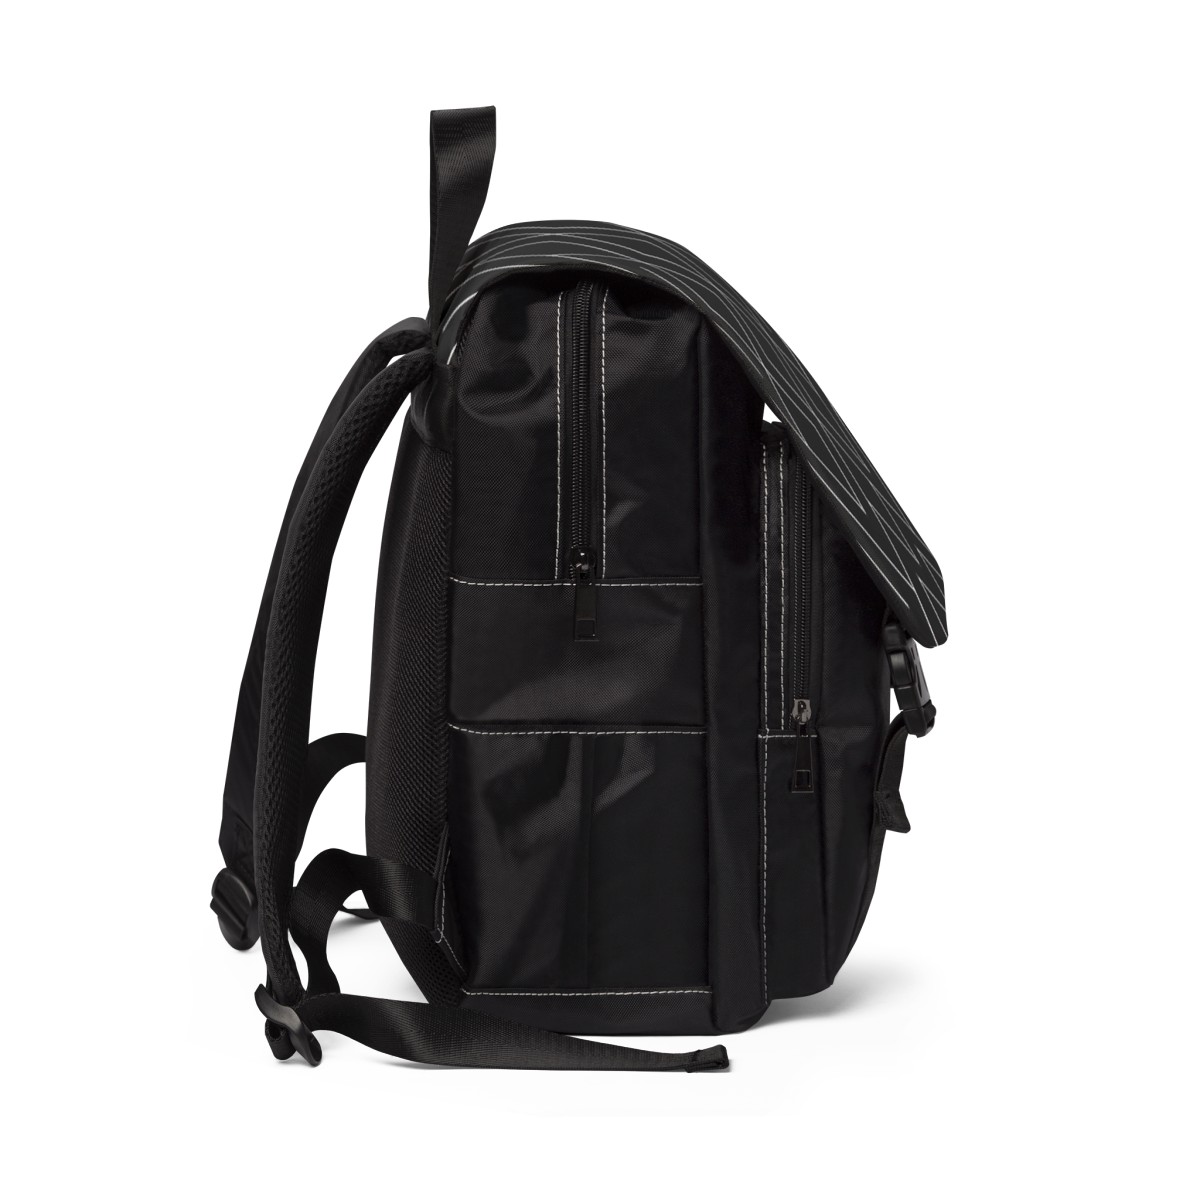 Unisex Backpack Black product thumbnail image